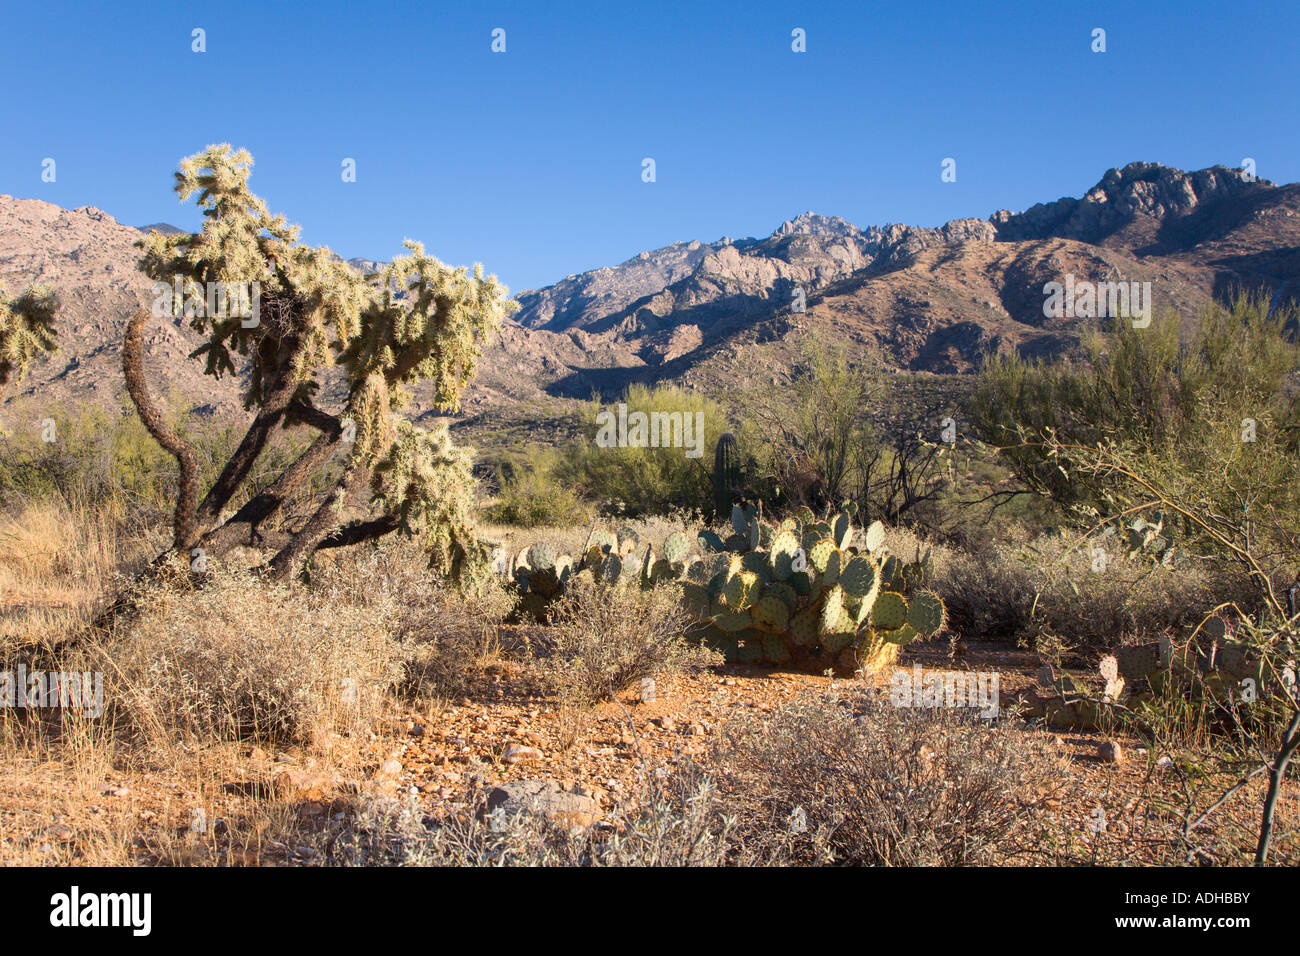 Kakteen und Bäume wachsen in Wäsche in der Sonora-Wüste in der Nähe von Tucson Arizona Stockfoto